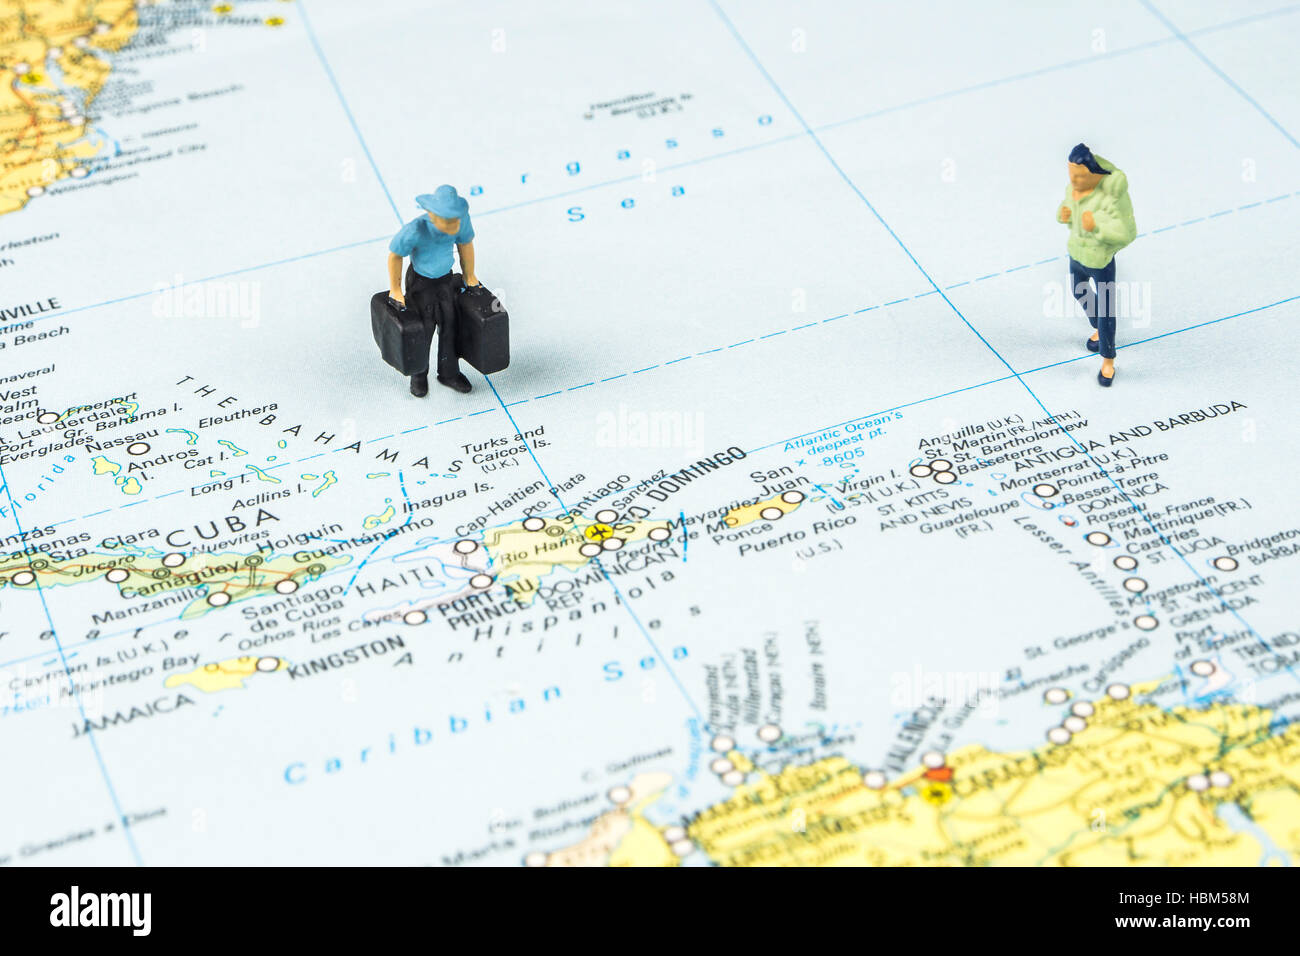 Libre de figurine miniature de jeunes voyageurs debout sur une grande carte à côté d'îles des Caraïbes Banque D'Images